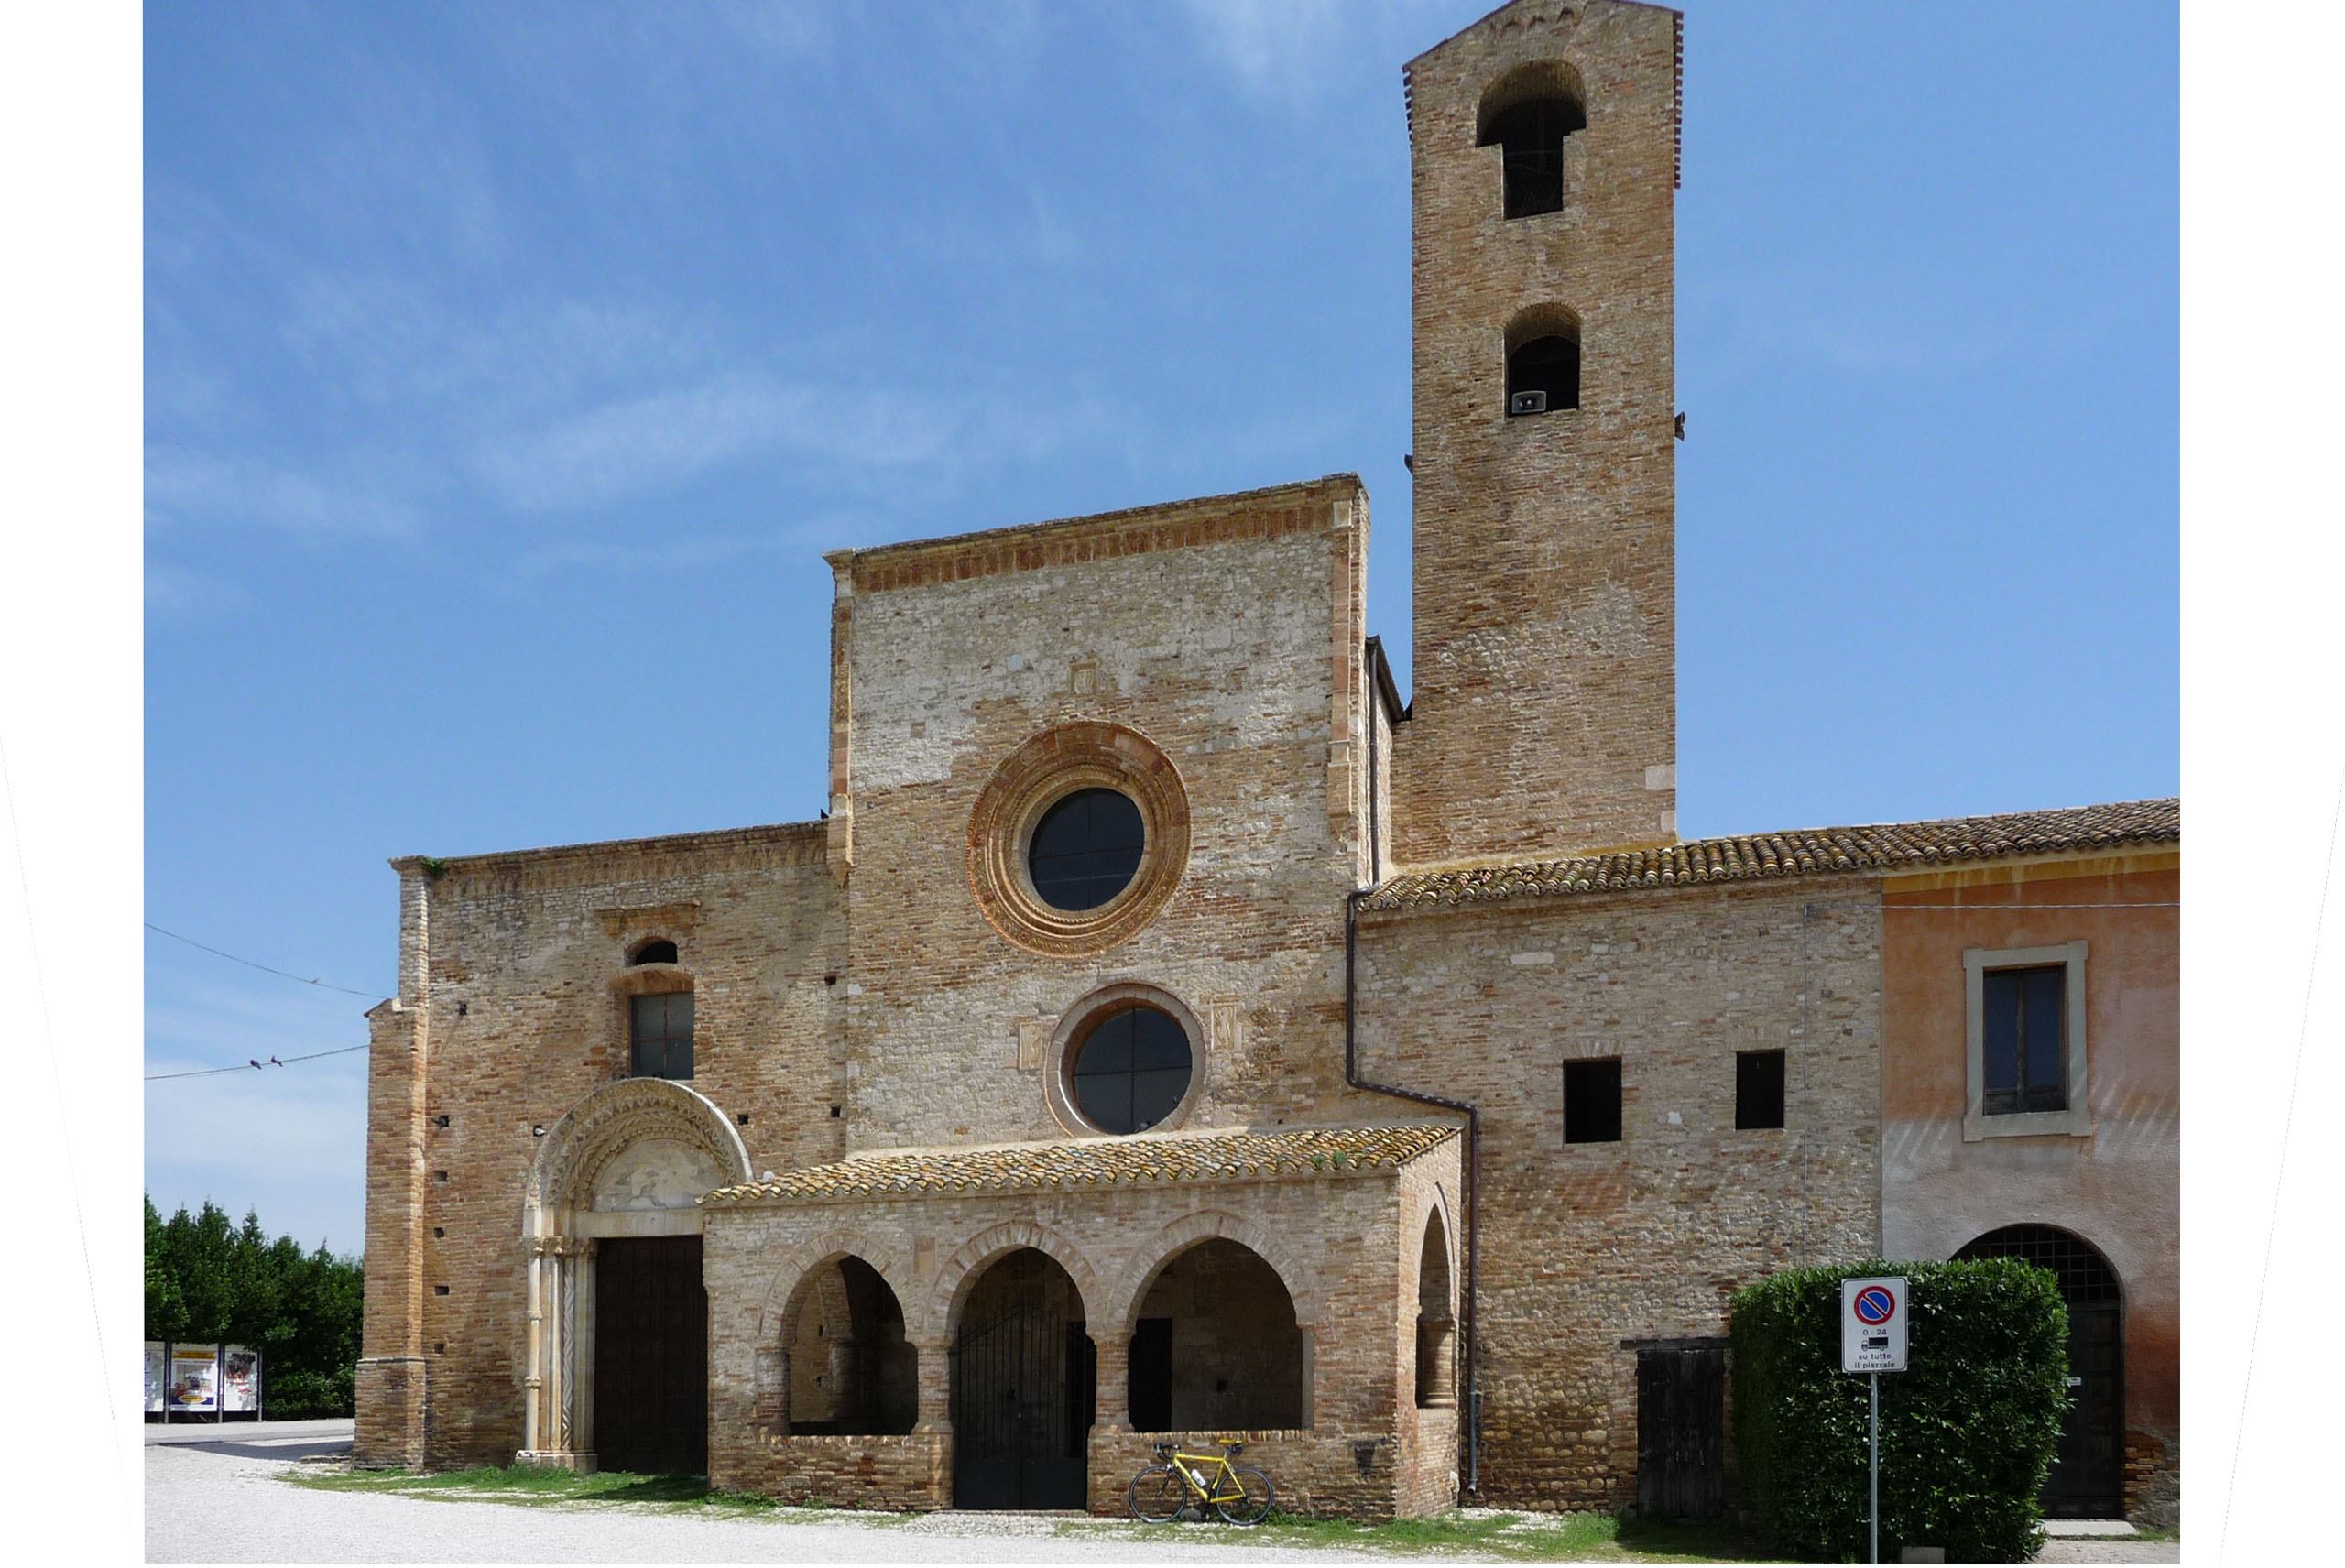 Il complesso di S. Maria di Propezzano sorge nella valle del Vomano a poca distanza dall'abitato di Morro D'Oro.